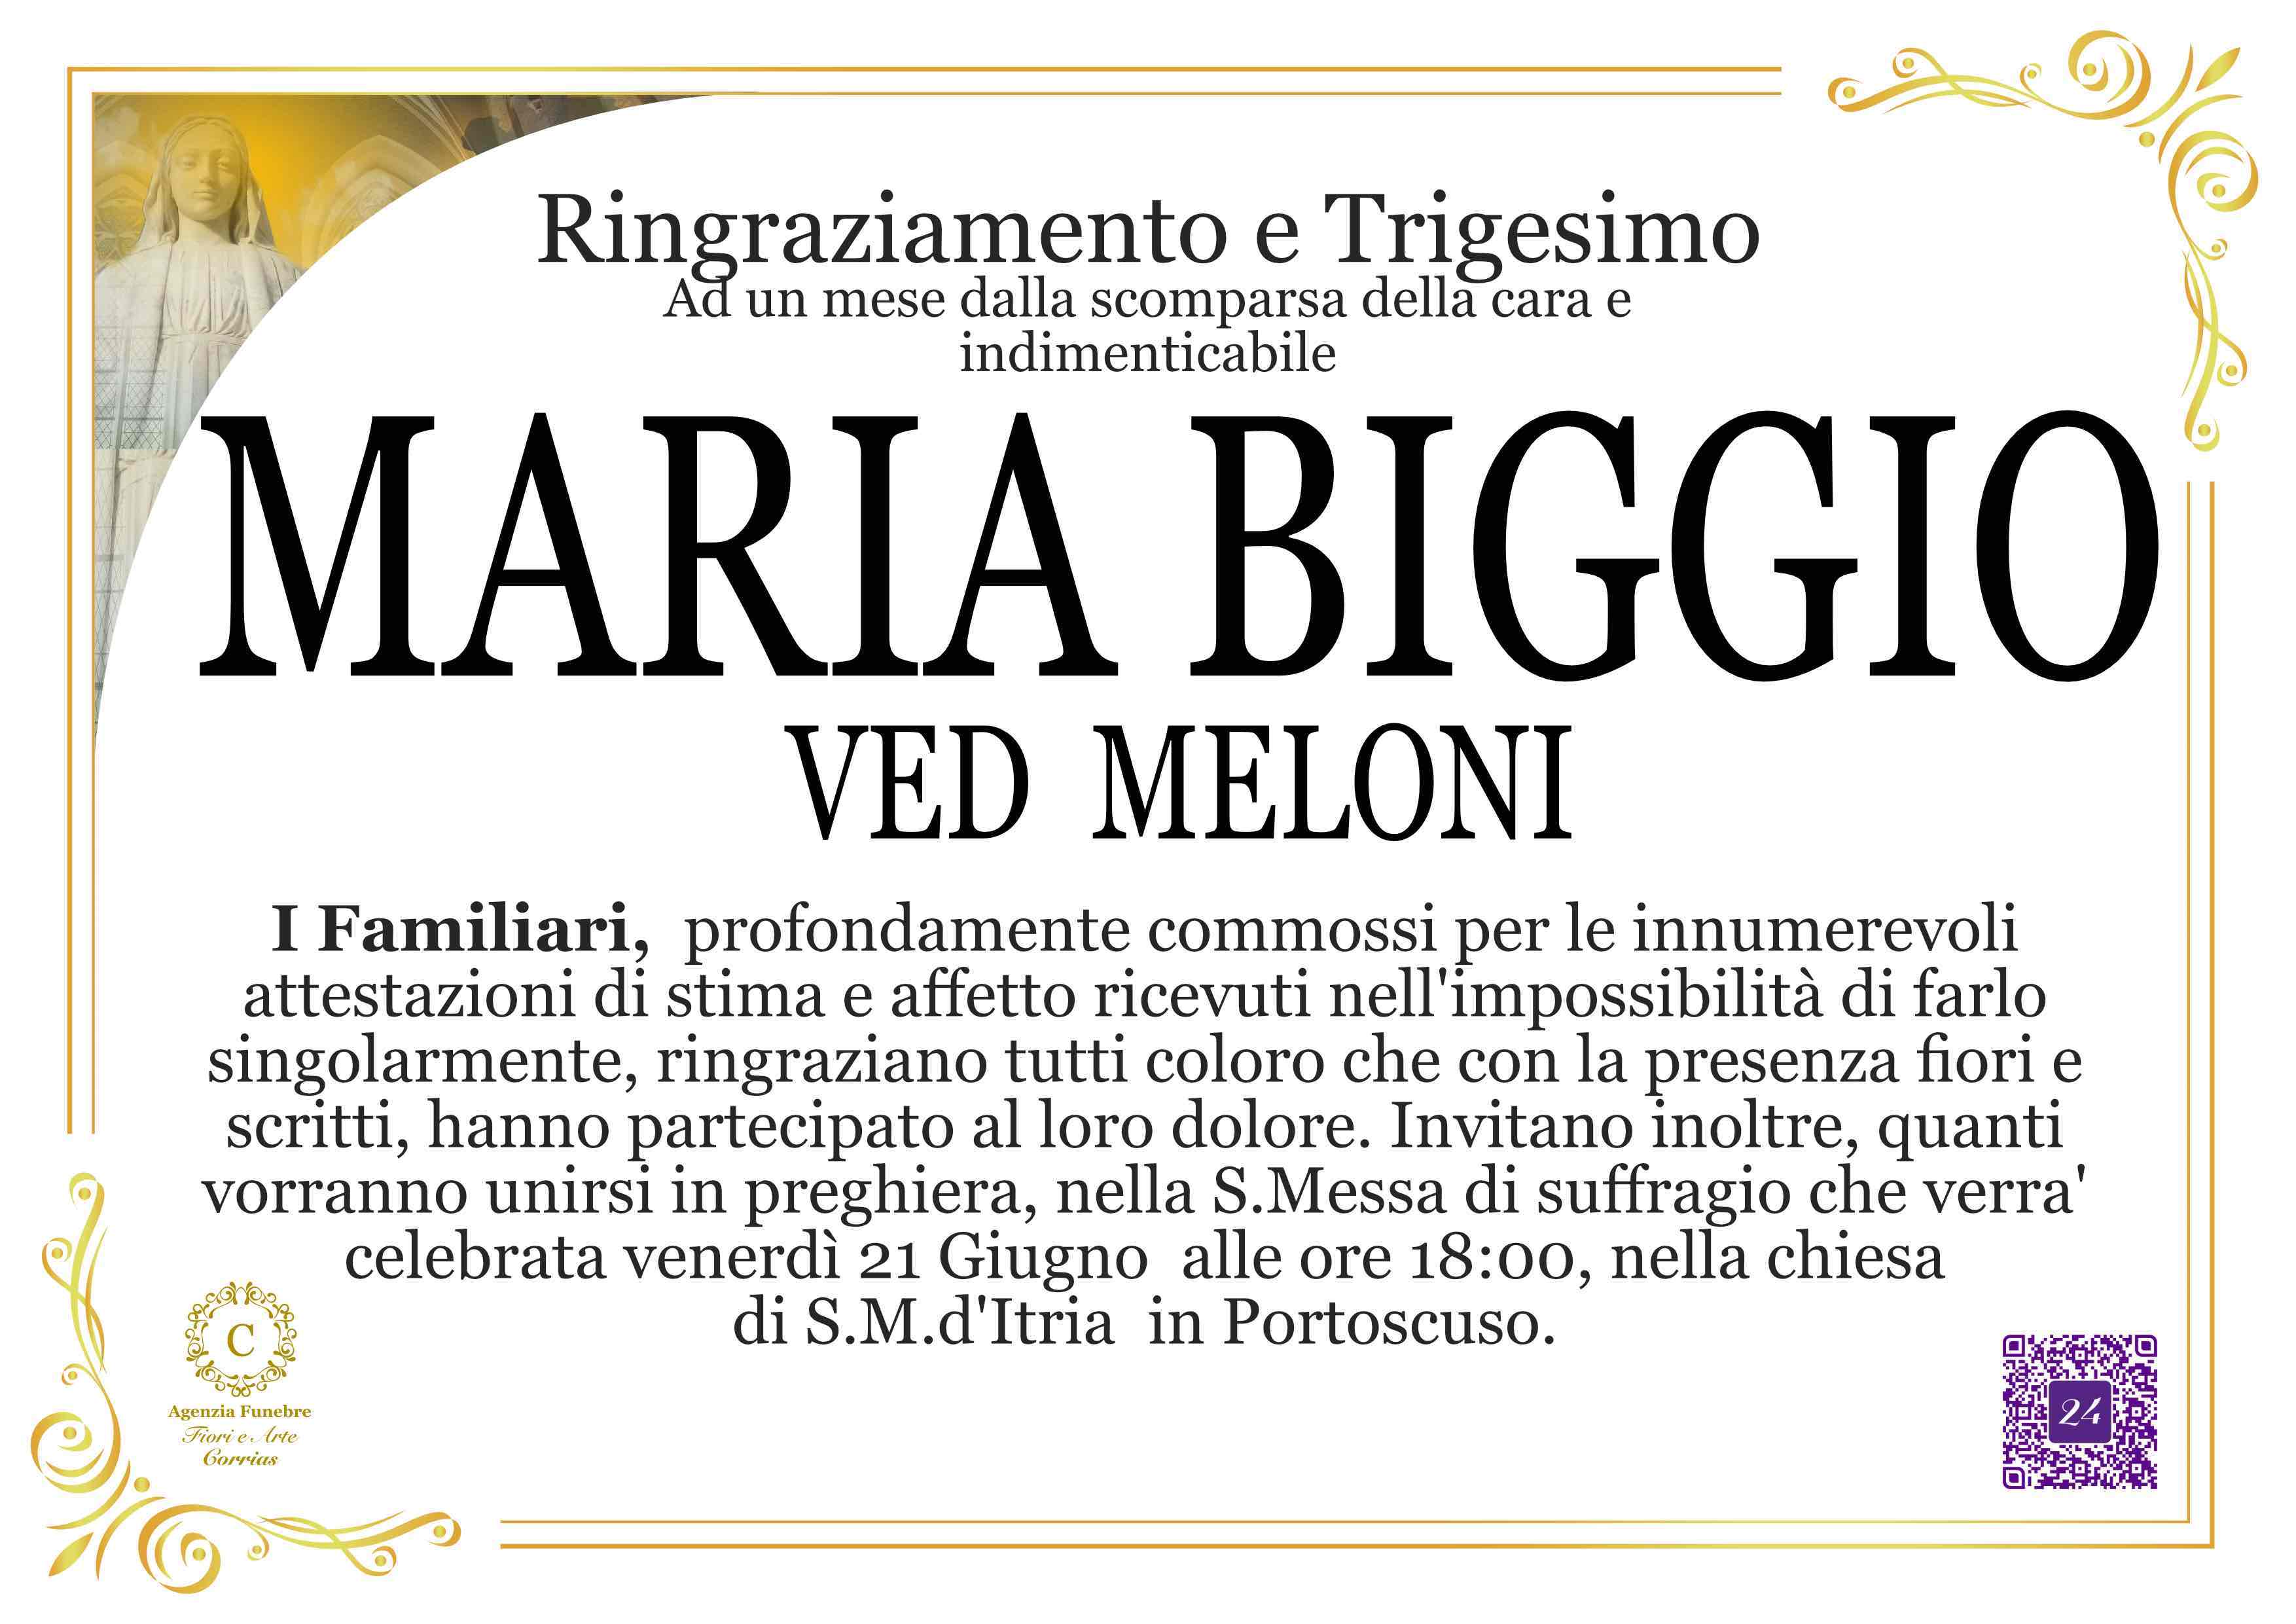 Maria Biggio